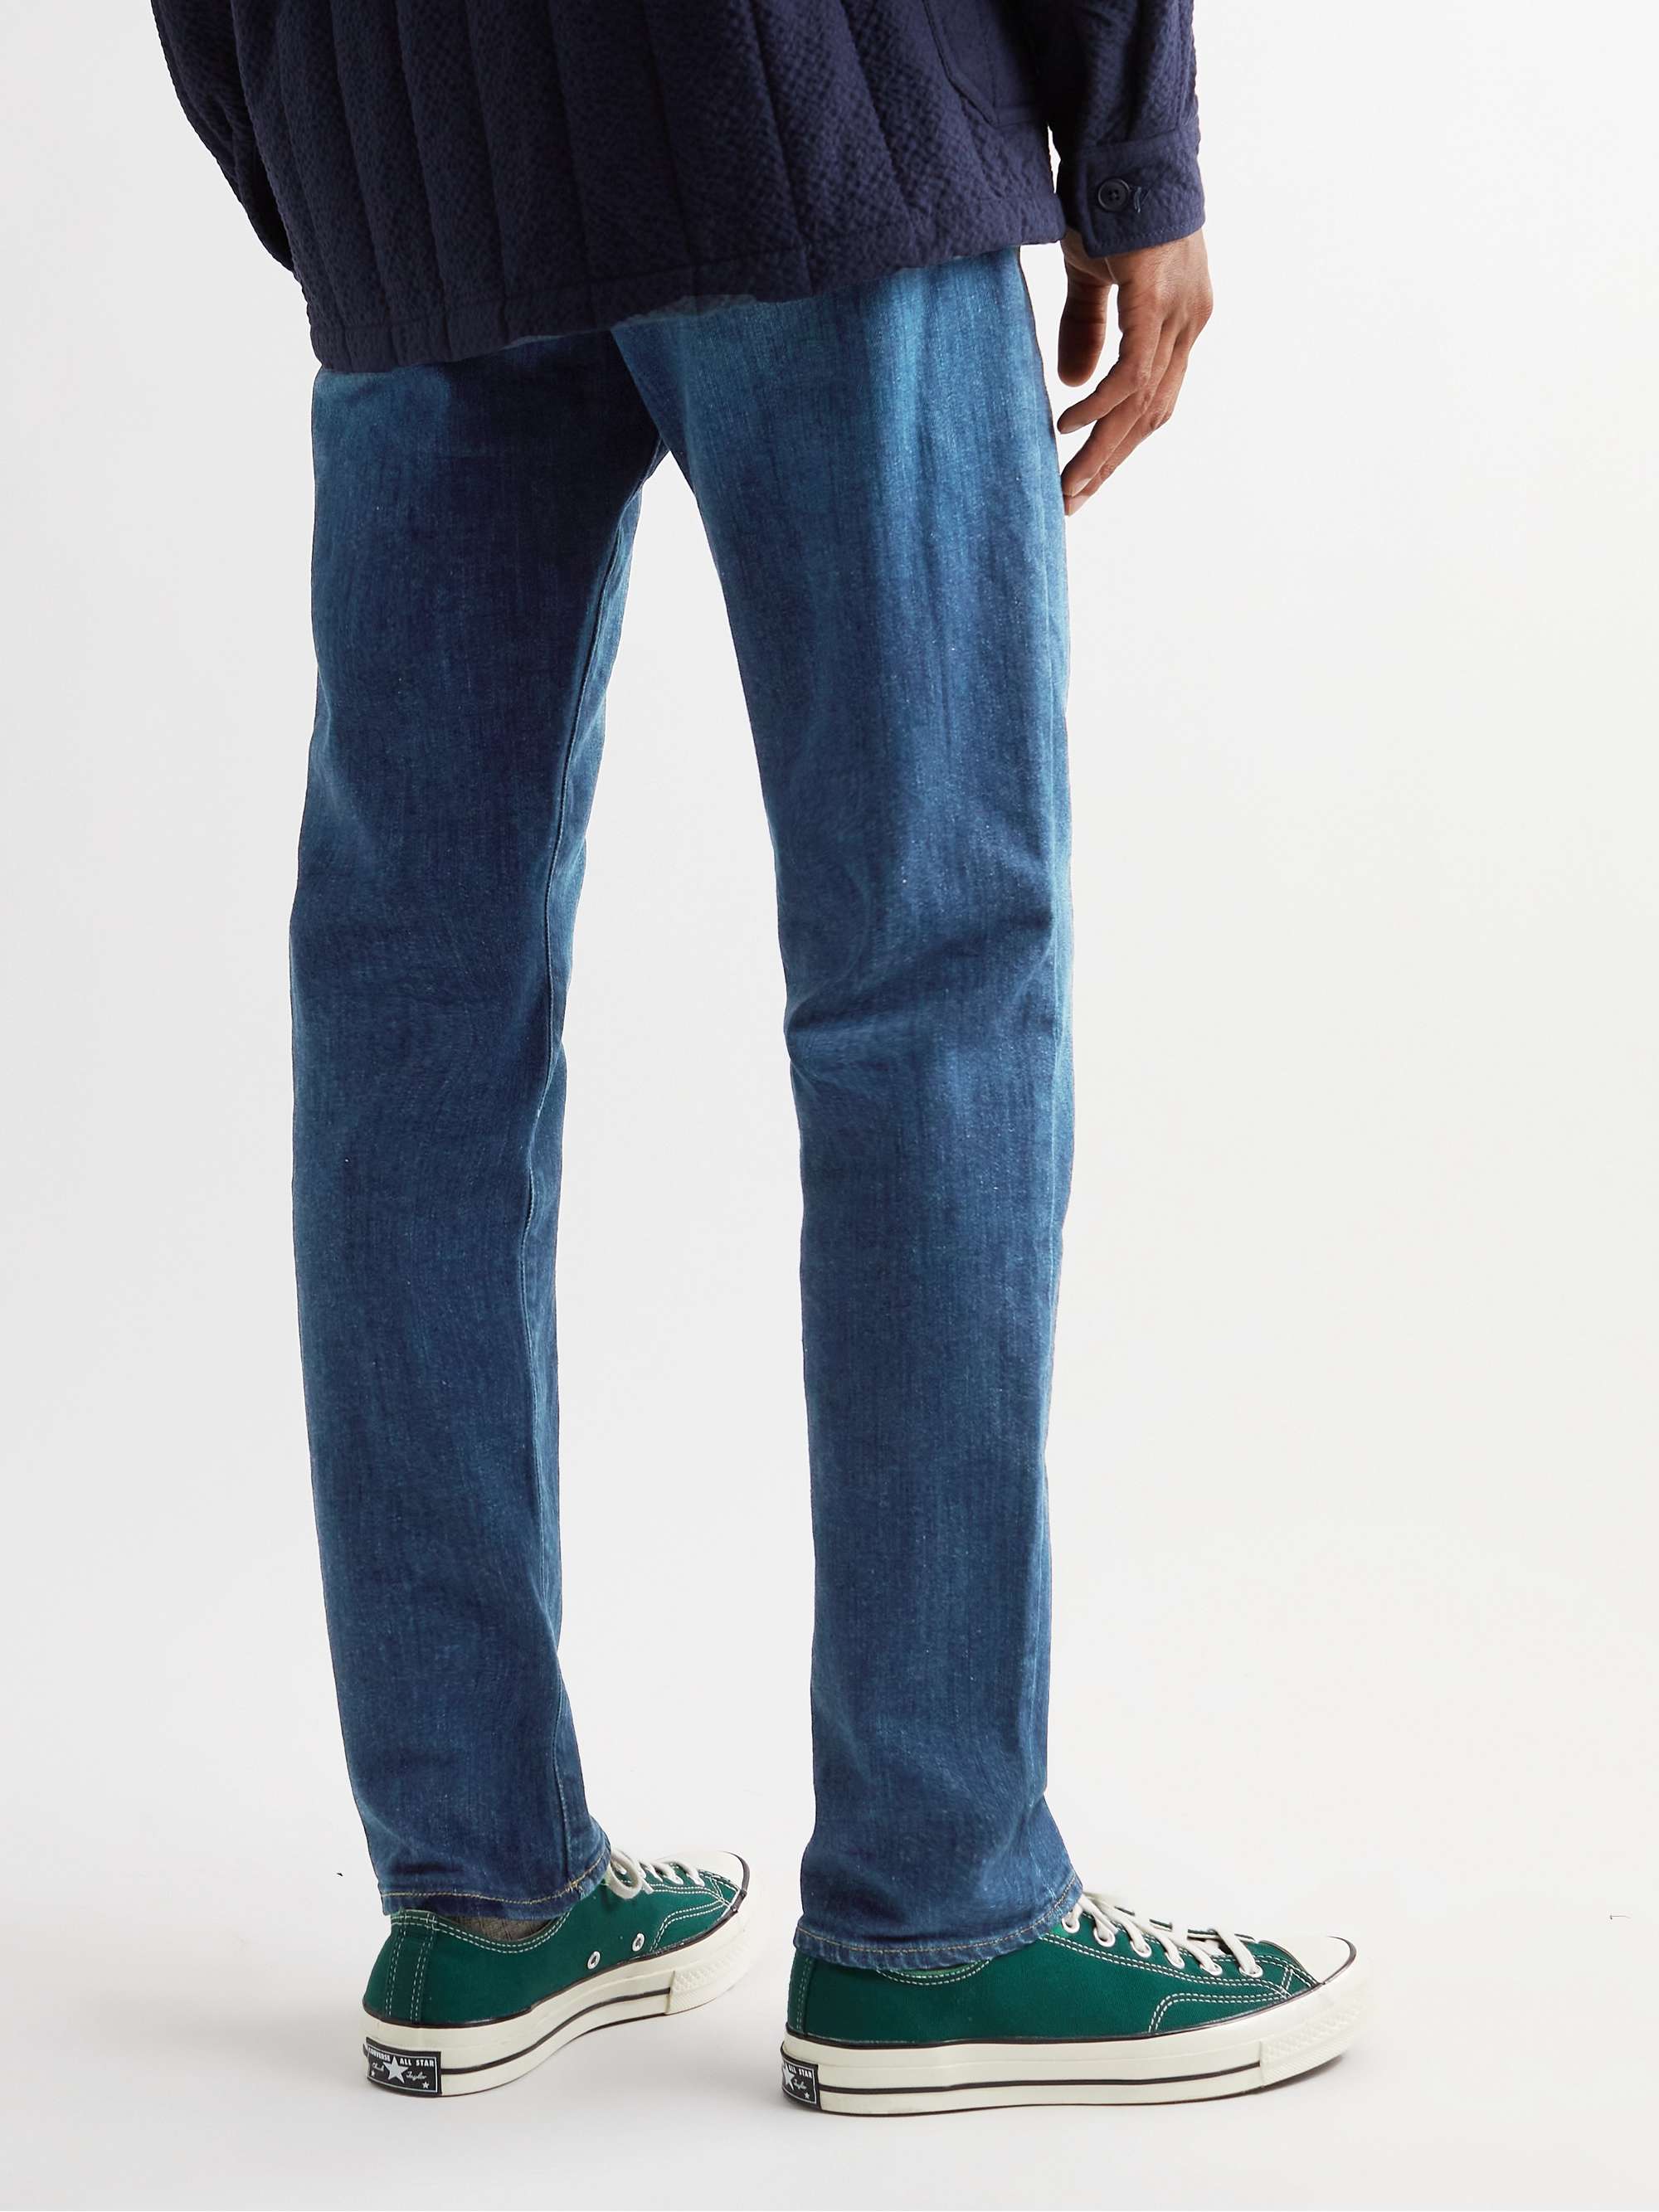 FRAME L'Homme Slim-Fit Jeans